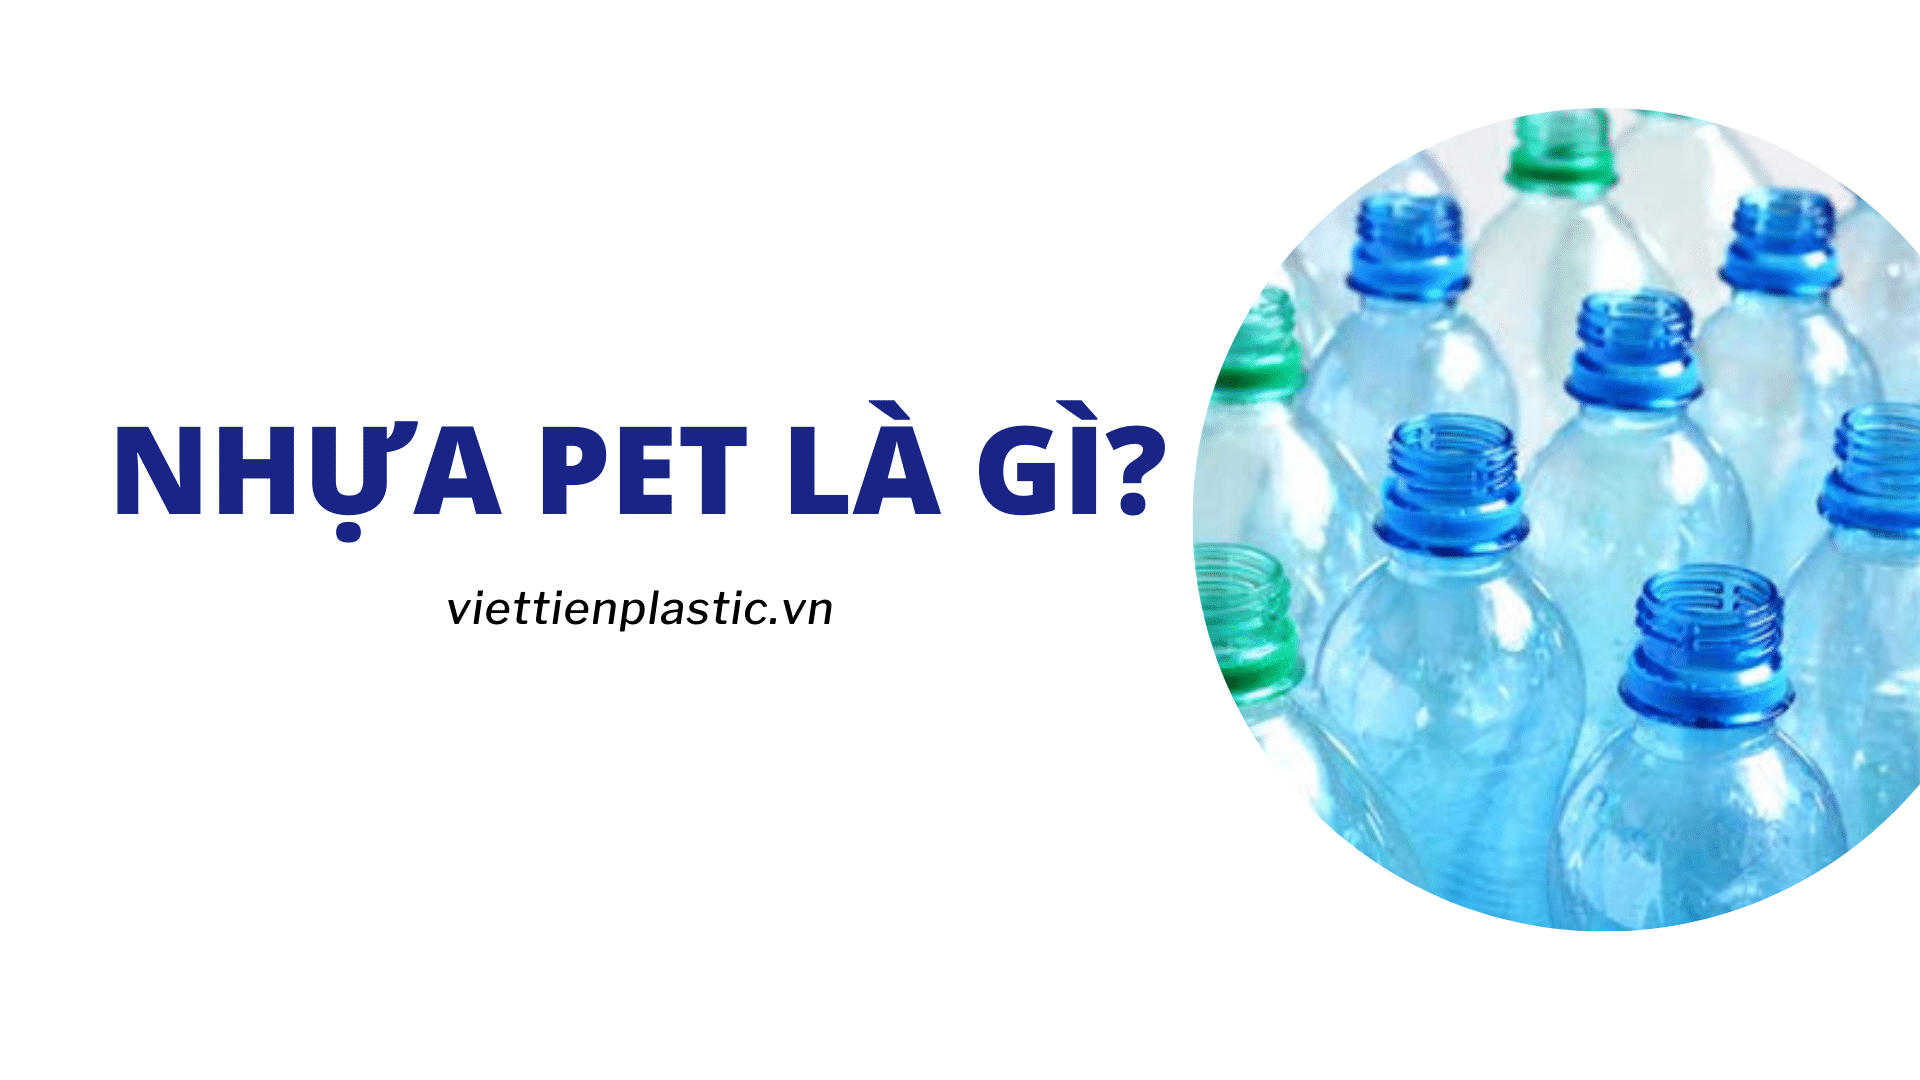 Nhựa PET là gì? Những ứng dụng và đặc tính nổi bật của nhựa PET là gì?